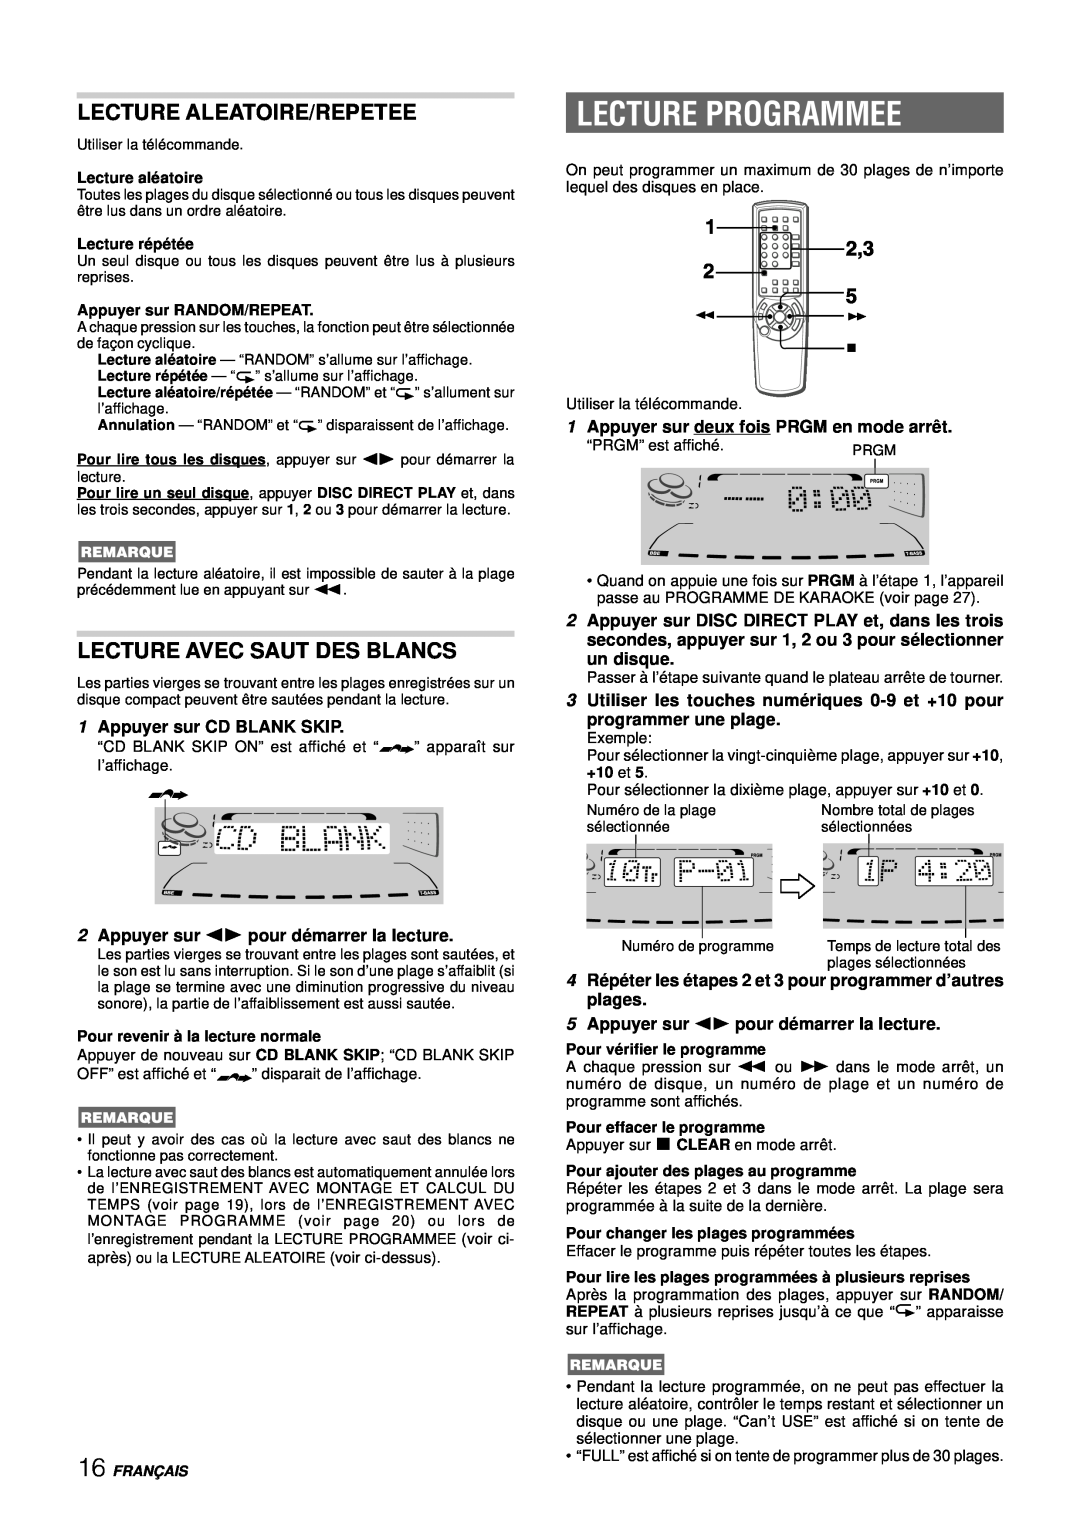 Aiwa NSX-DS8 manual Lecture Programmee, Lecture Aleatoire/Repetee, Lecture Avec Saut Des Blancs, 1Appuyer sur CD BLANK SKIP 